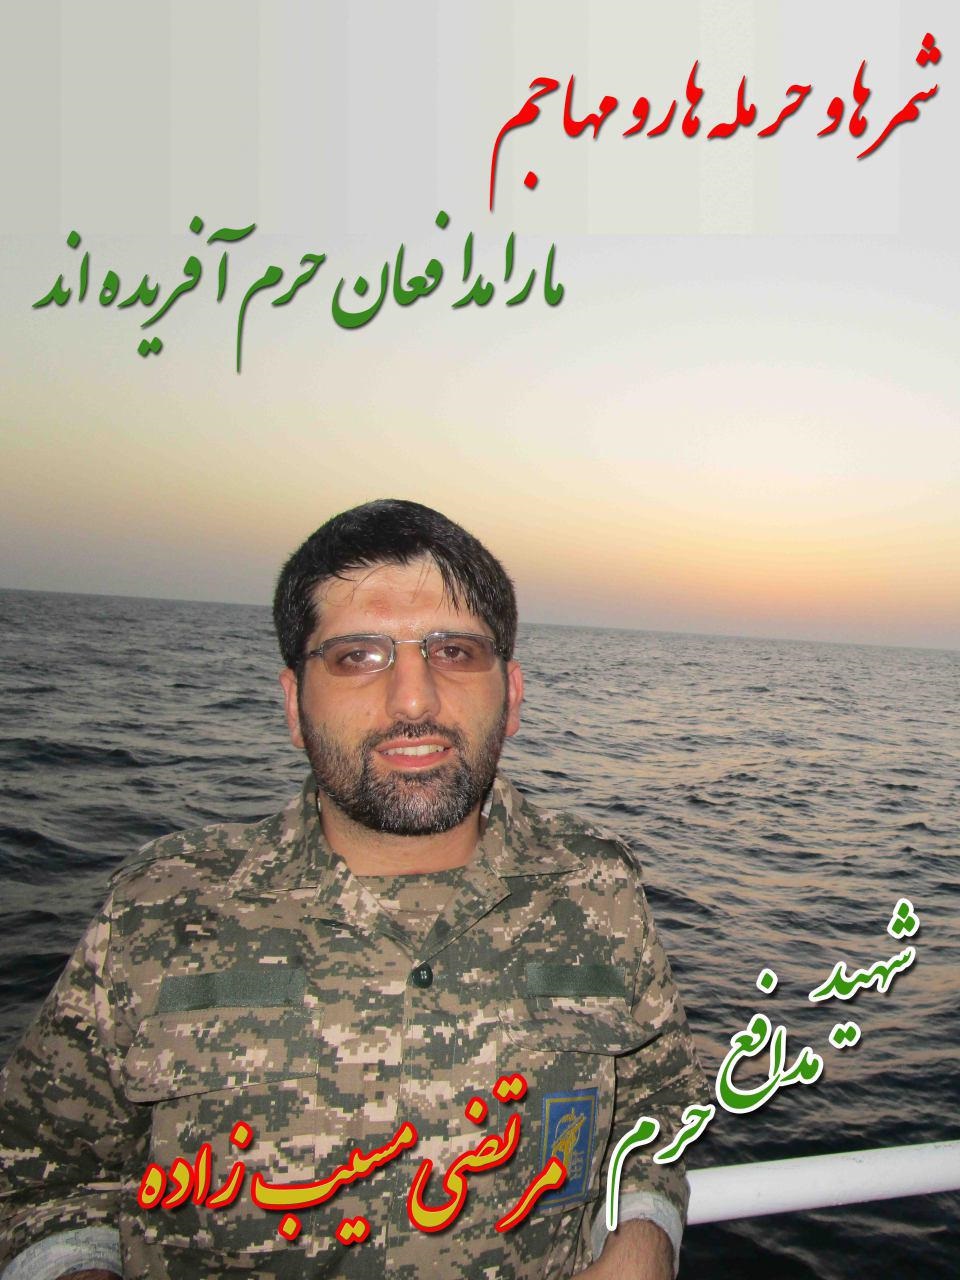 حاج مرتضی یک افسر ارشد و متخصص در سطح کشور بود/ زندگینامه شهید مرتضی مسیب زاده +تصاویر